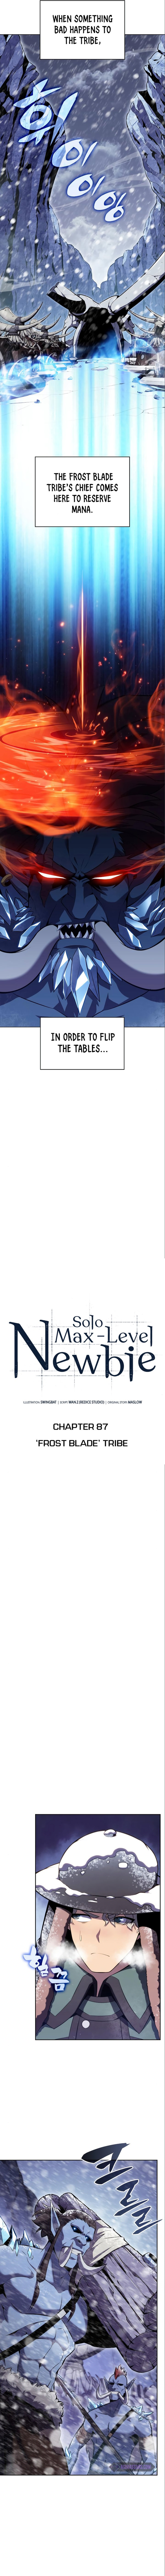 Solo Max Level Newbie 87 3